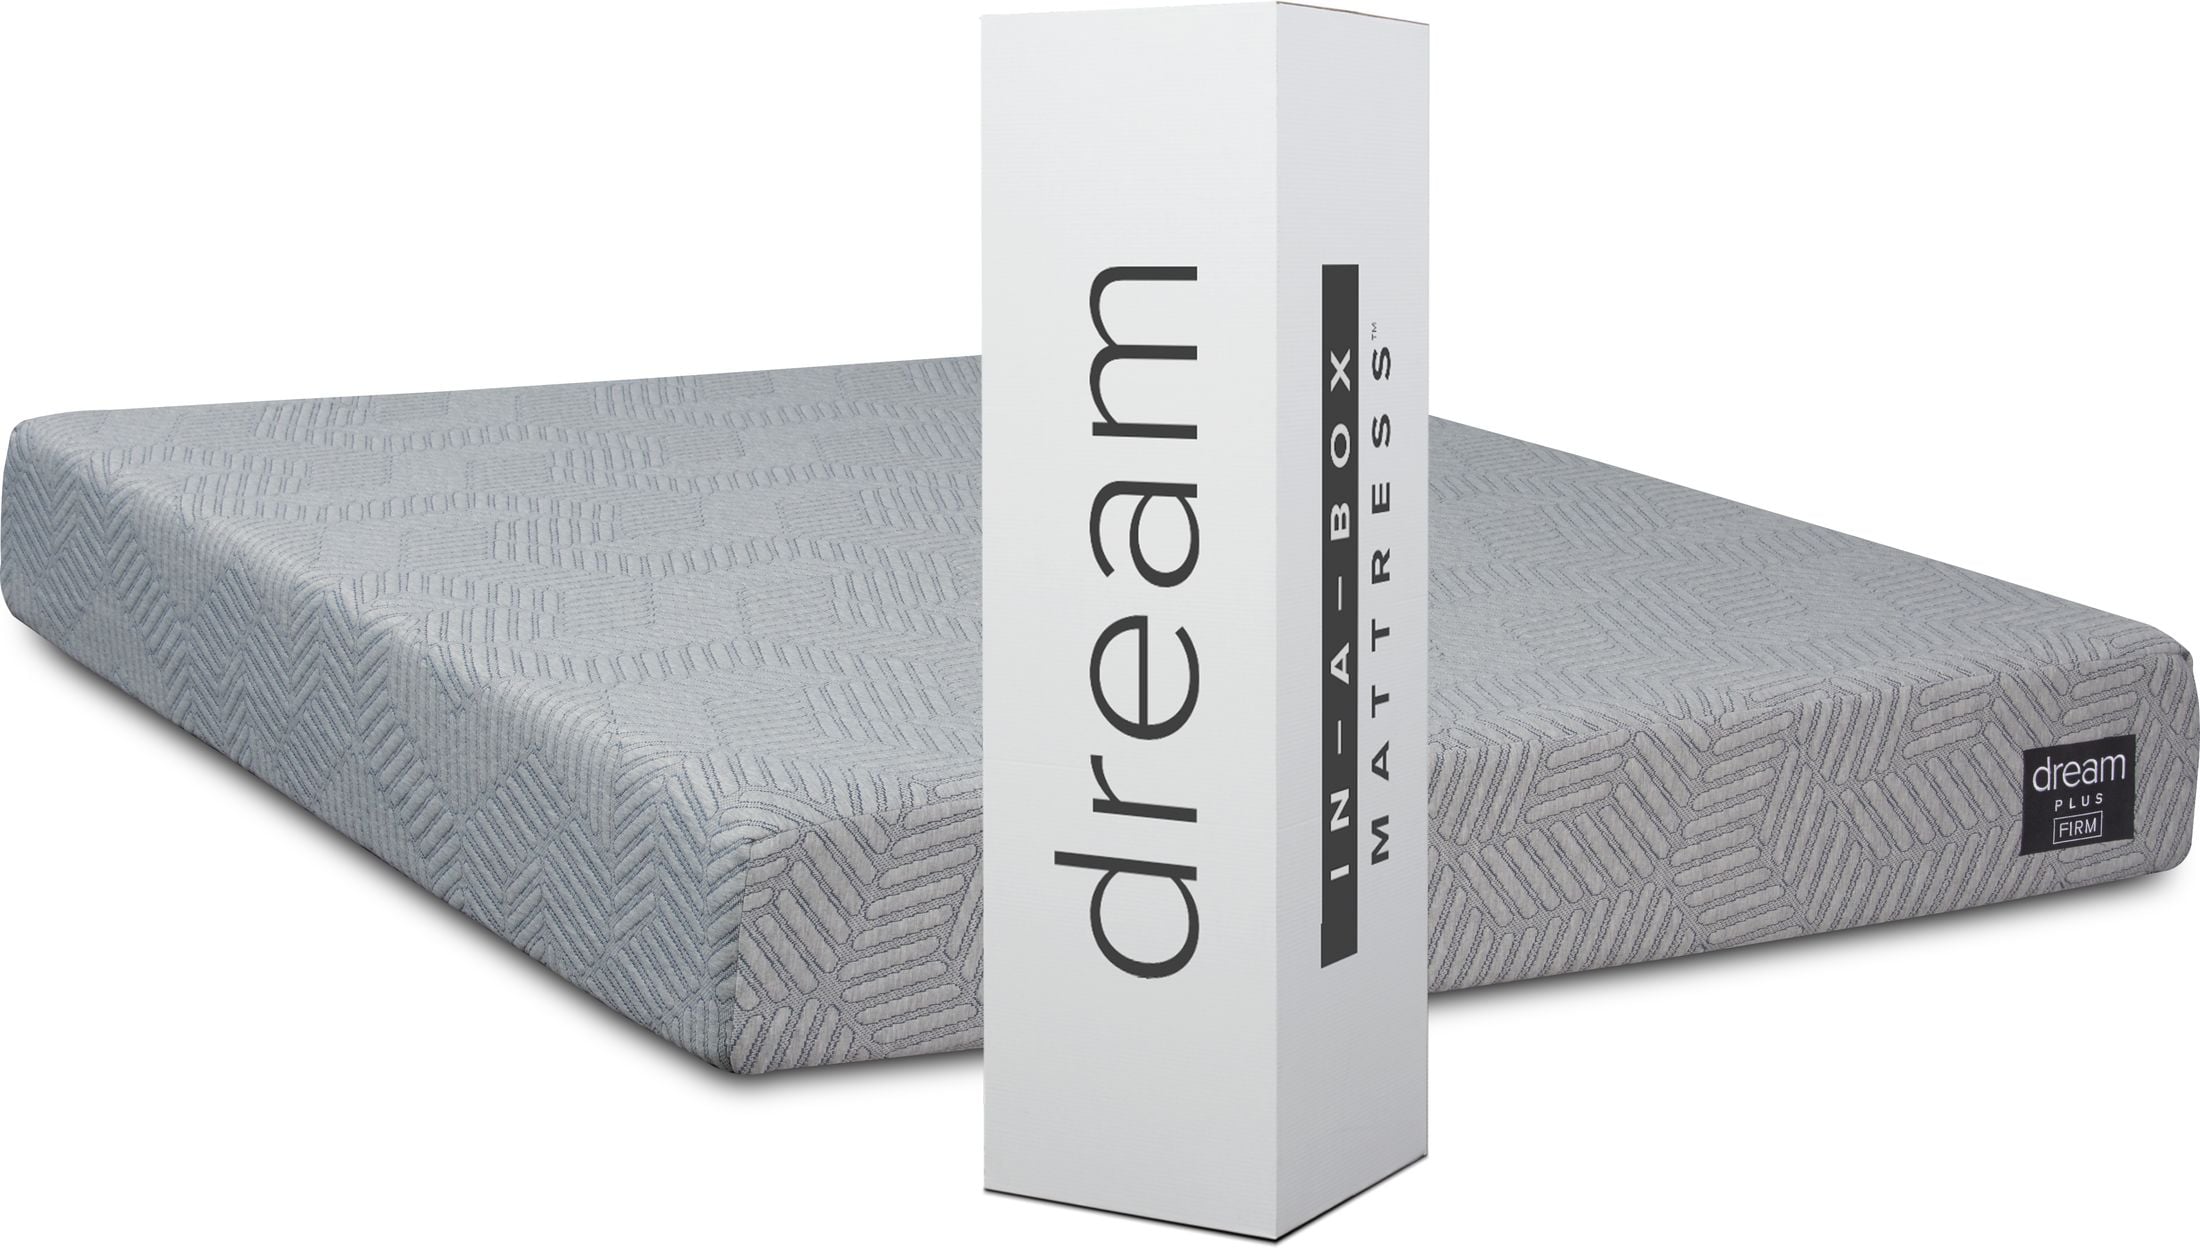 dream plus firm mattress reviews